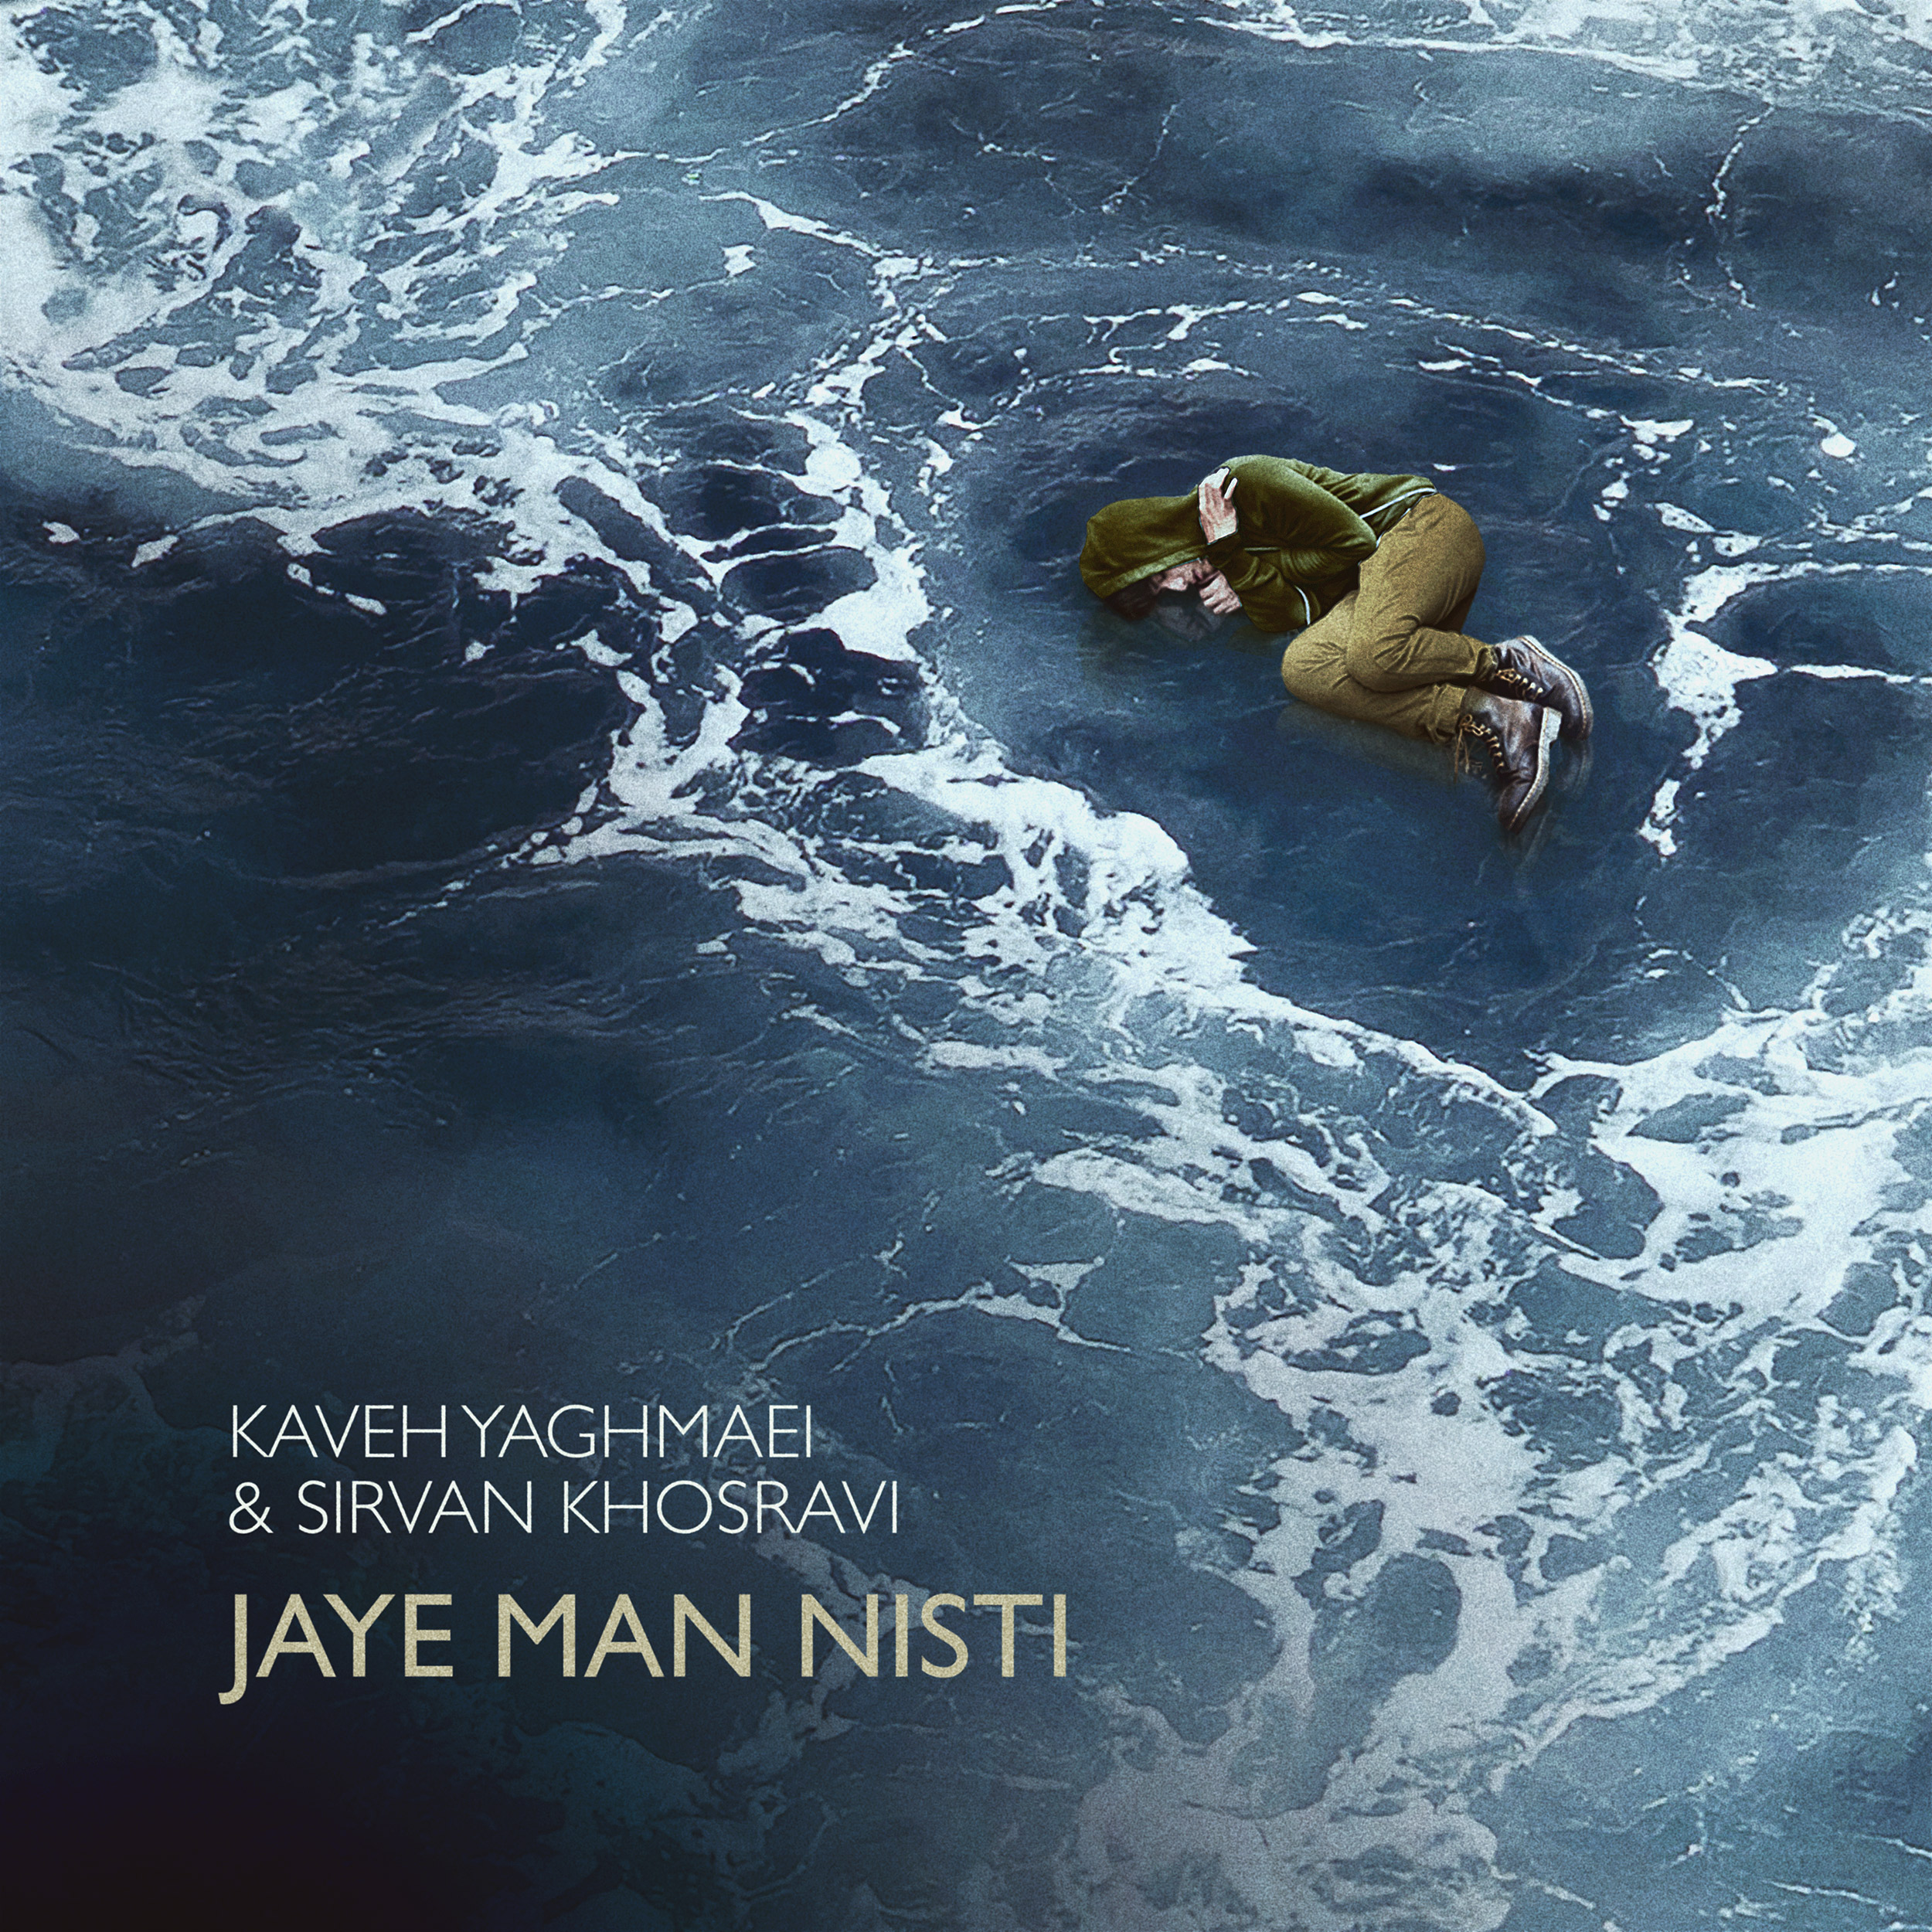 Kaveh Yaghmaei & Sirvan Khosravi – Jaye Man Nisti